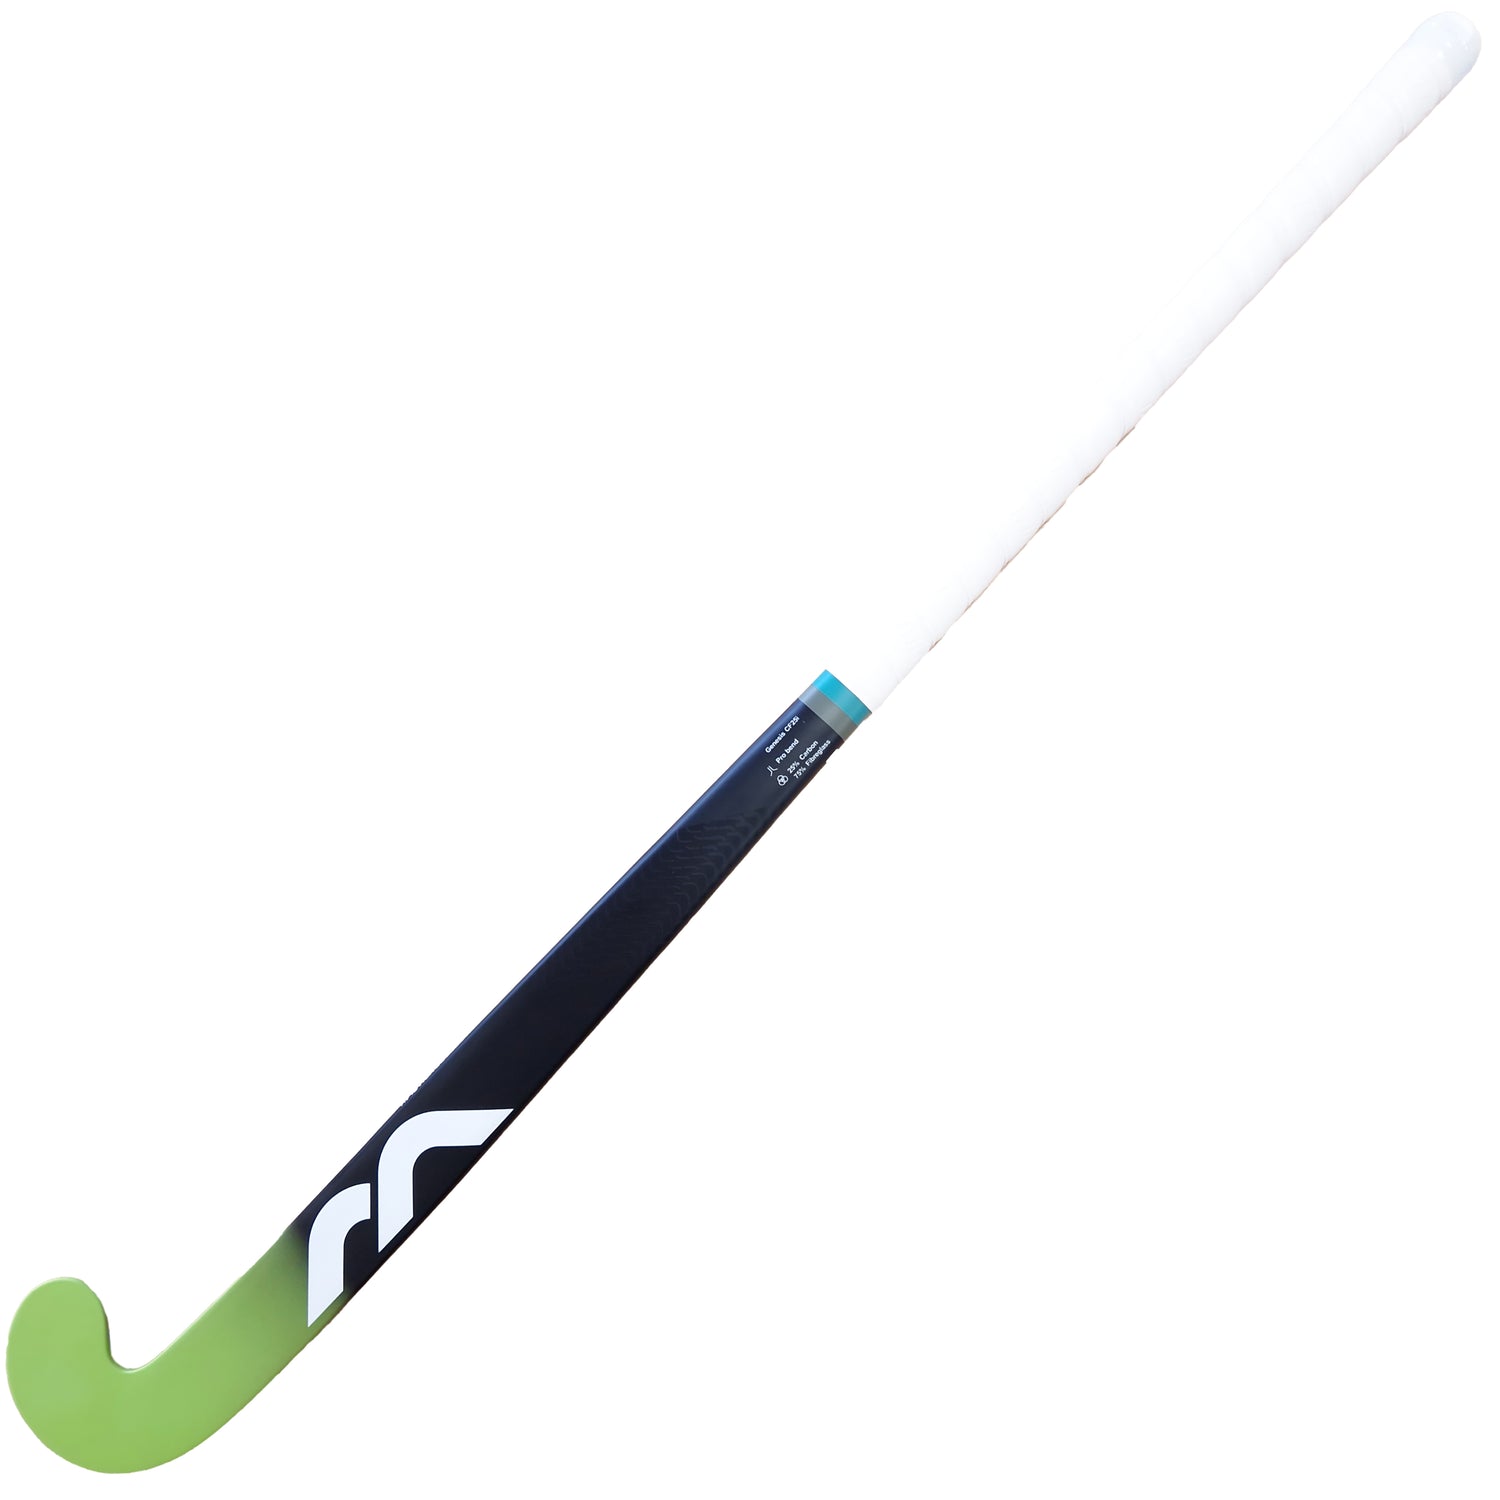 Mercian Indoor Genesis CF25i Hockey Stick